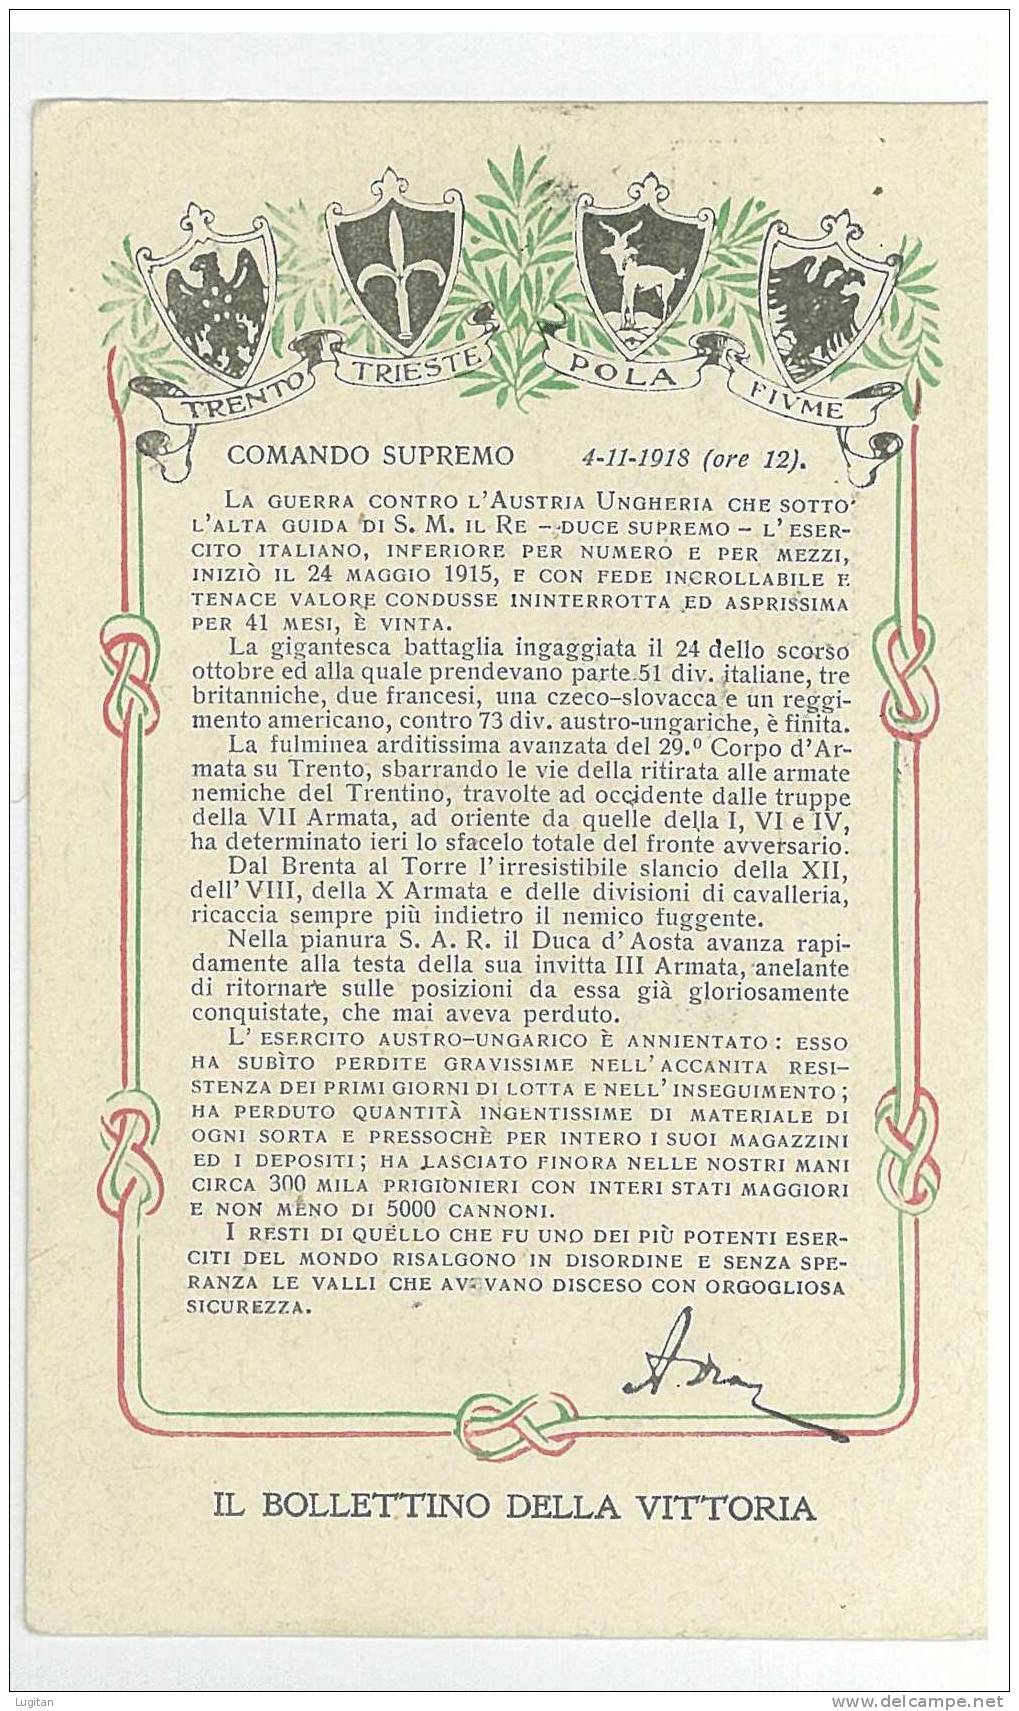 CARTOLINA - IL BOLLETTINO DELLA VITTORIA - TRENTO TRIESTE - POLA FIUME - NON COMUNE - COMANDO SUPREMO 4/11/1918 - Macerata